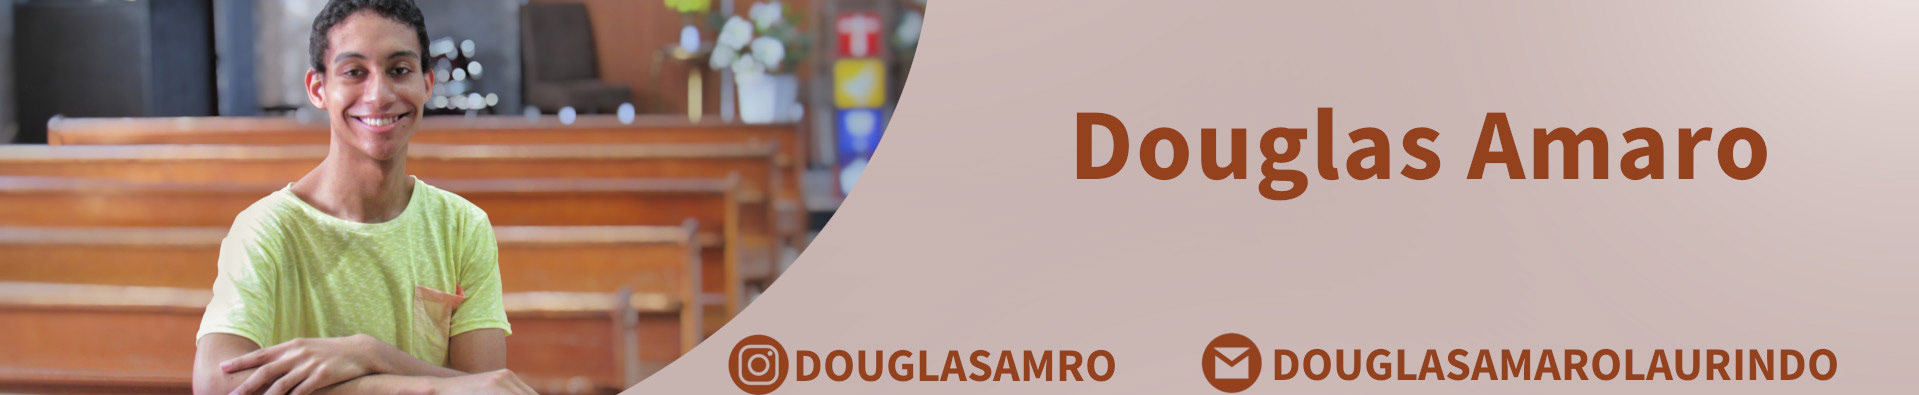 Douglas Laurindo's profile banner